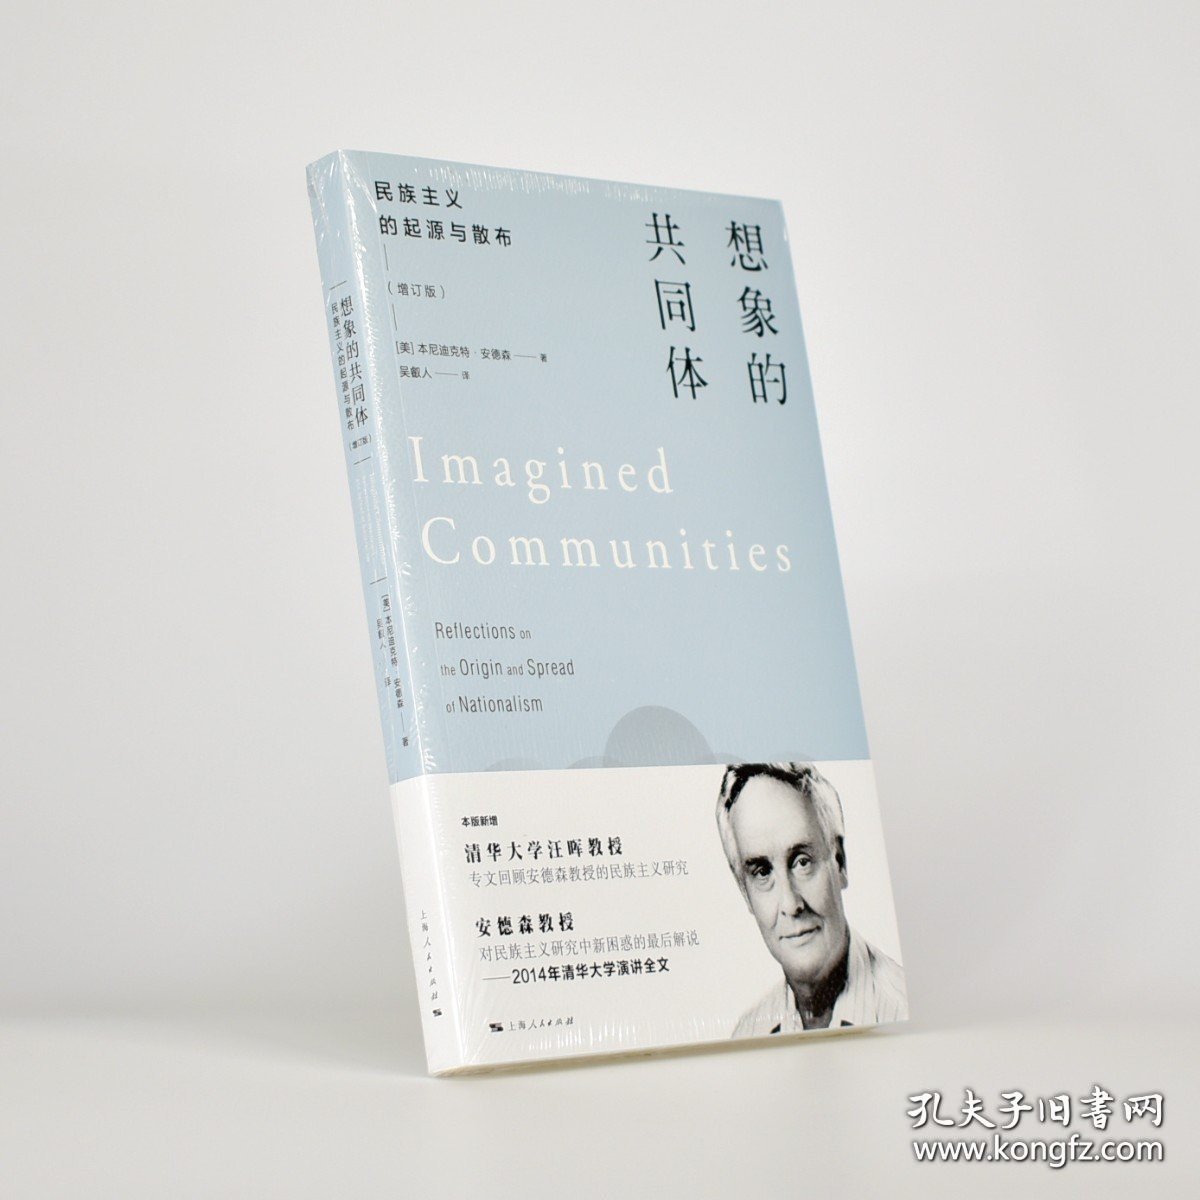 正版书籍想象的共同体 民族主义的起源与散布 [美国] 本尼迪克特·安德森 出版社: 上海人民出版社 译者: 吴叡人 ISBN: 9787208138490